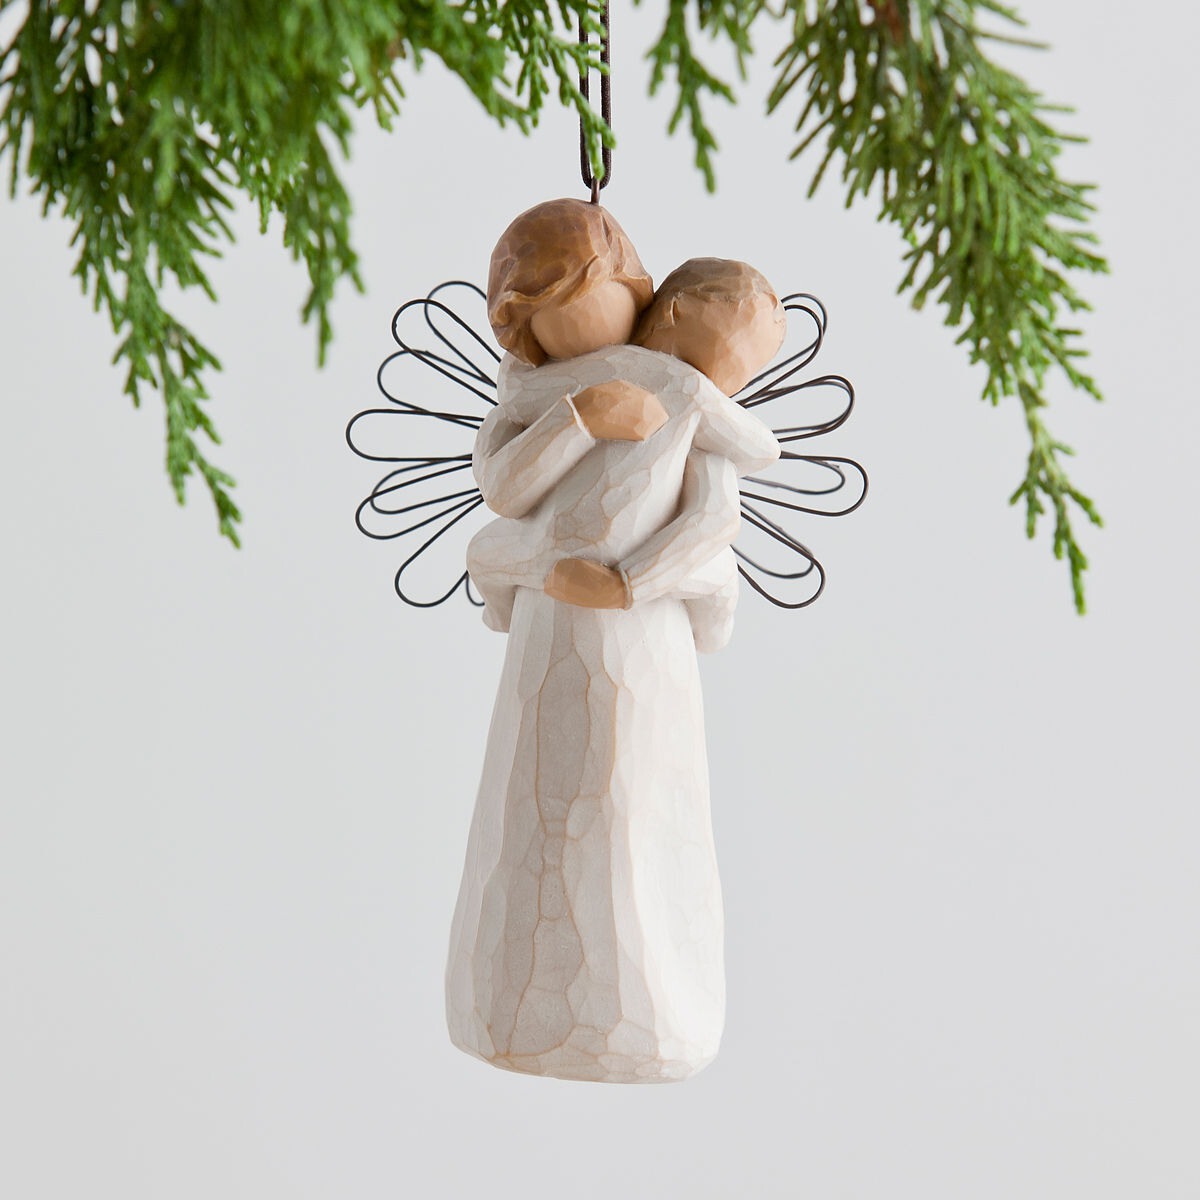 ウィローツリーオーナメント 天使の祝福 | 親子 守護 おしゃれな置物 大人向け フィギュア 人形 インテリア雑貨 Willow Tree Angel's Embrace 正規輸入品